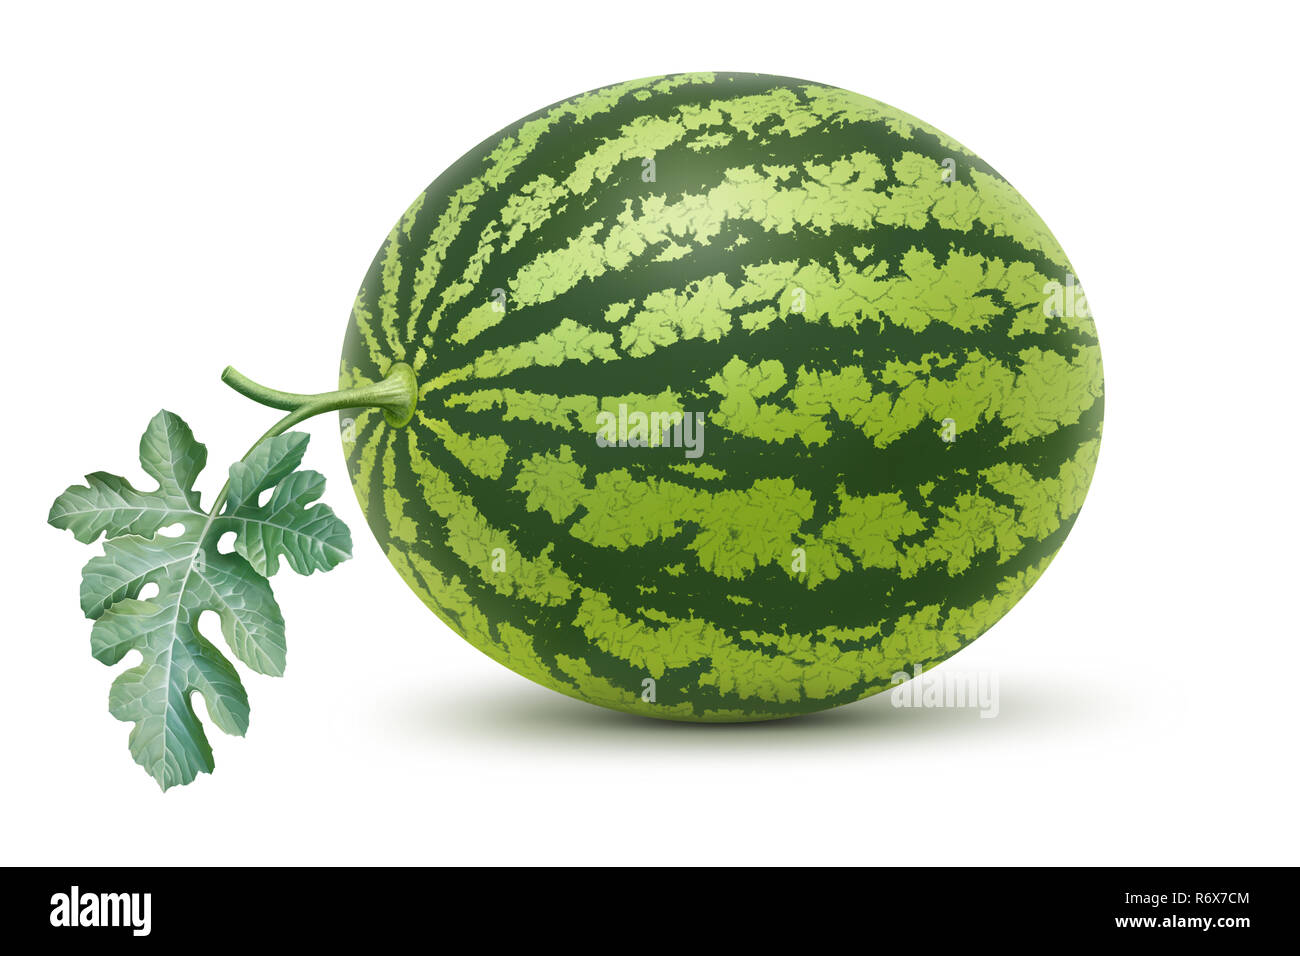 Watermelon et feuille illustration, peinture numérique Banque D'Images